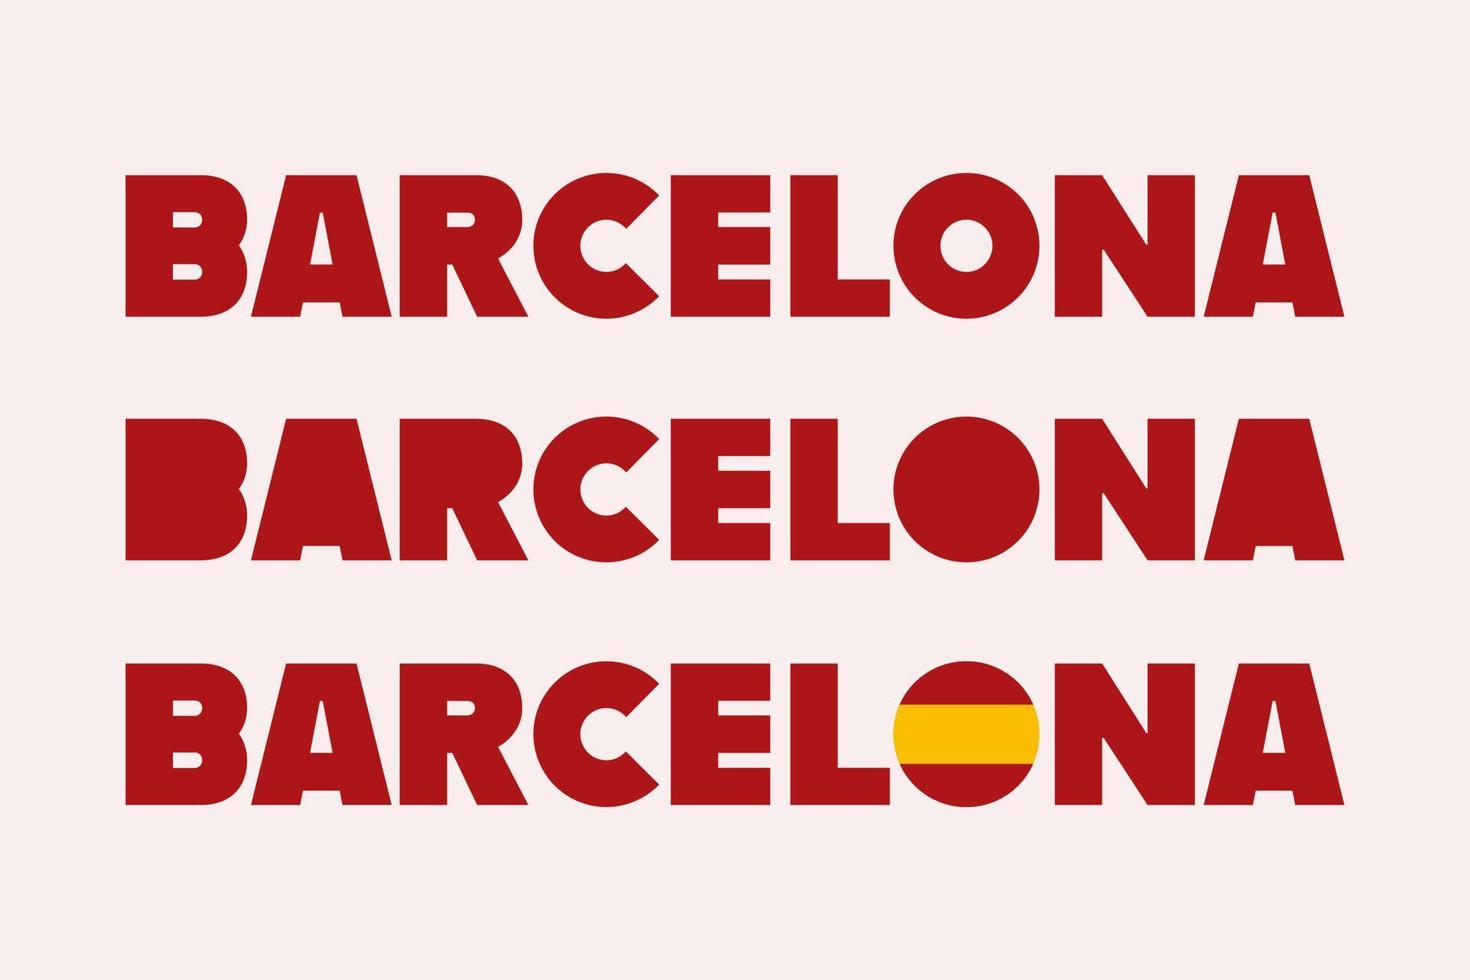 barcelona spanien, typografi mönster isolerat vektor. grupp av barcelona catalonia text baner tecken, för t-shirts, affischer, vykort och Mer. vektor